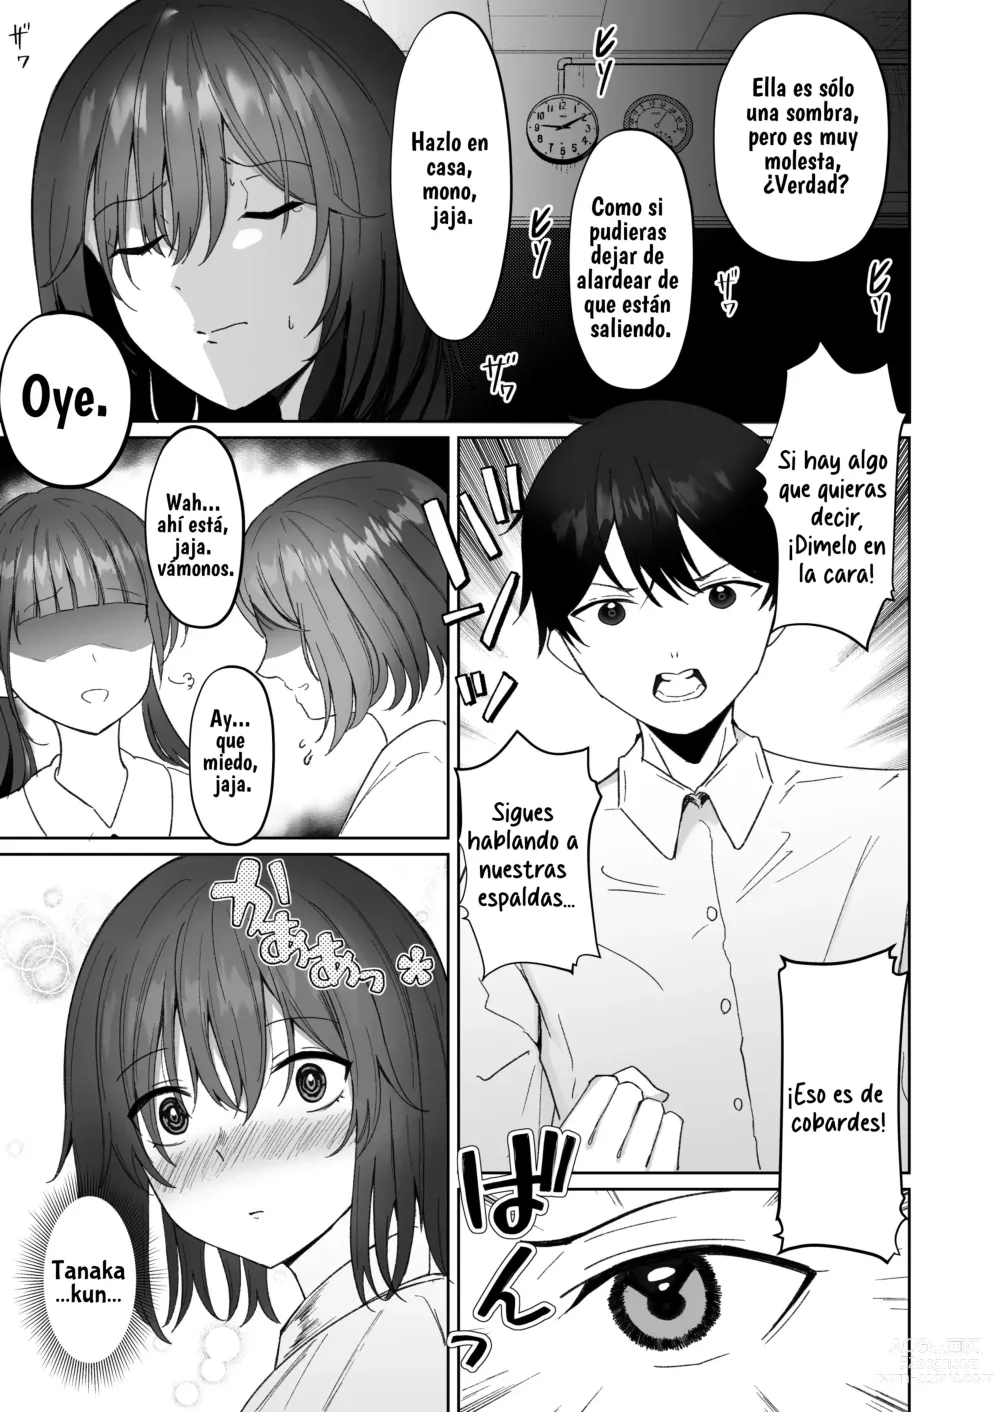 Page 6 of doujinshi El sufrimiento de la chica de pelo negro.